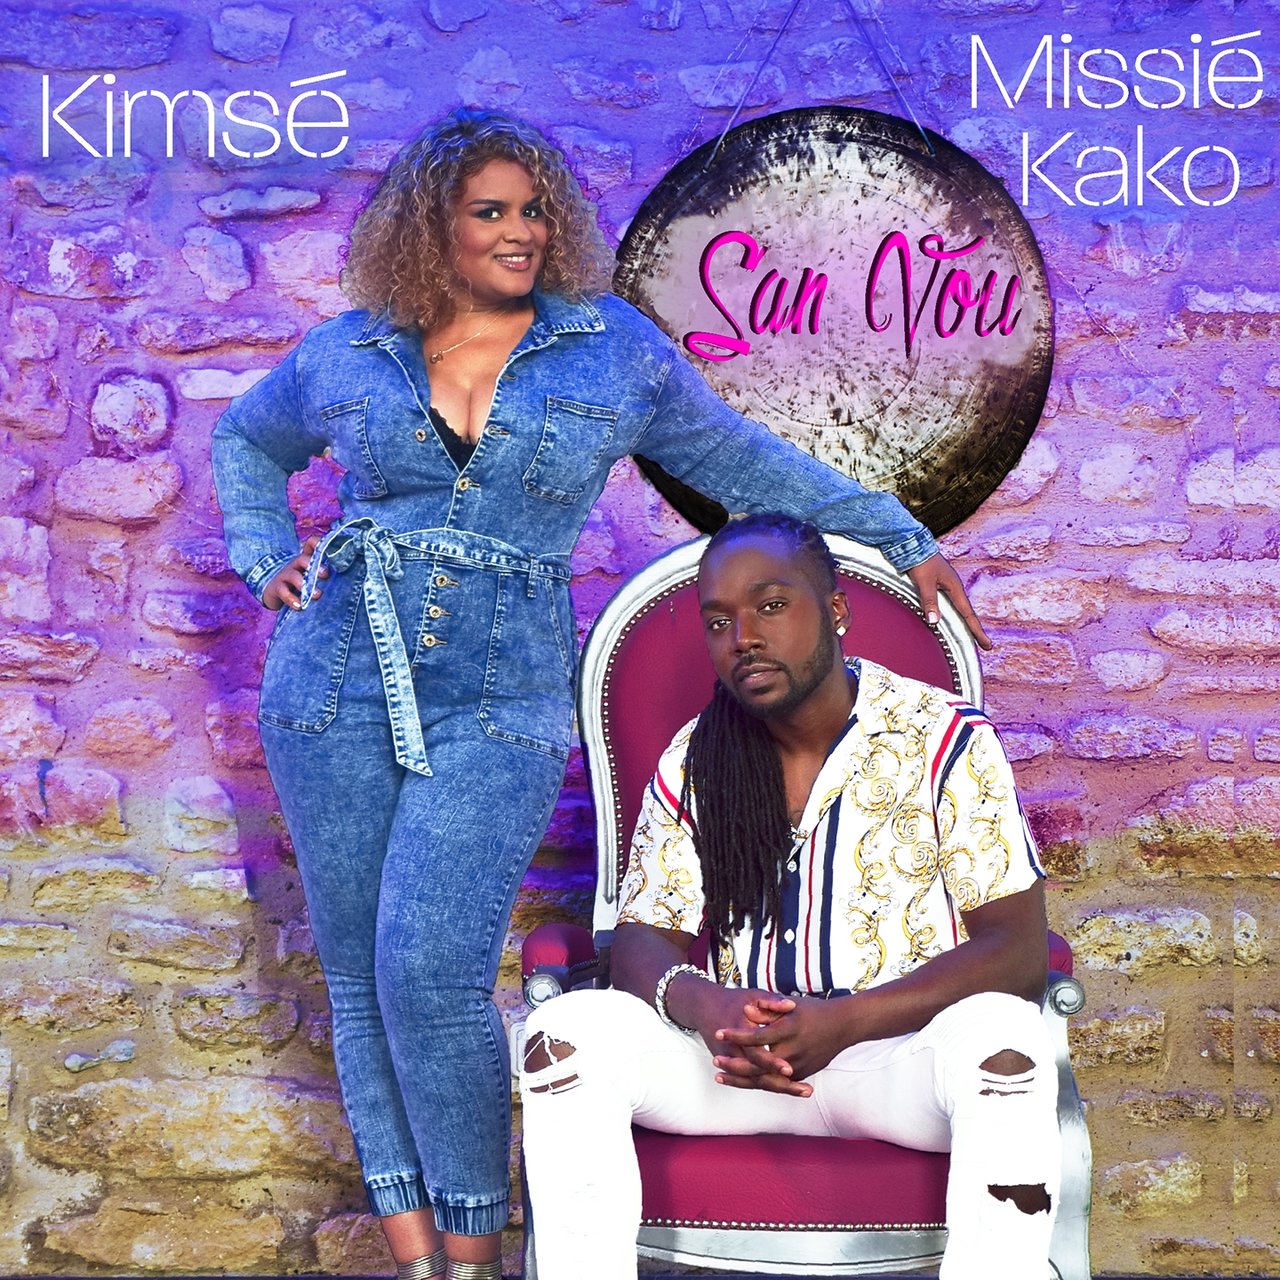 Kimsé - San Vou (ft. Missié Kako) (Cover)